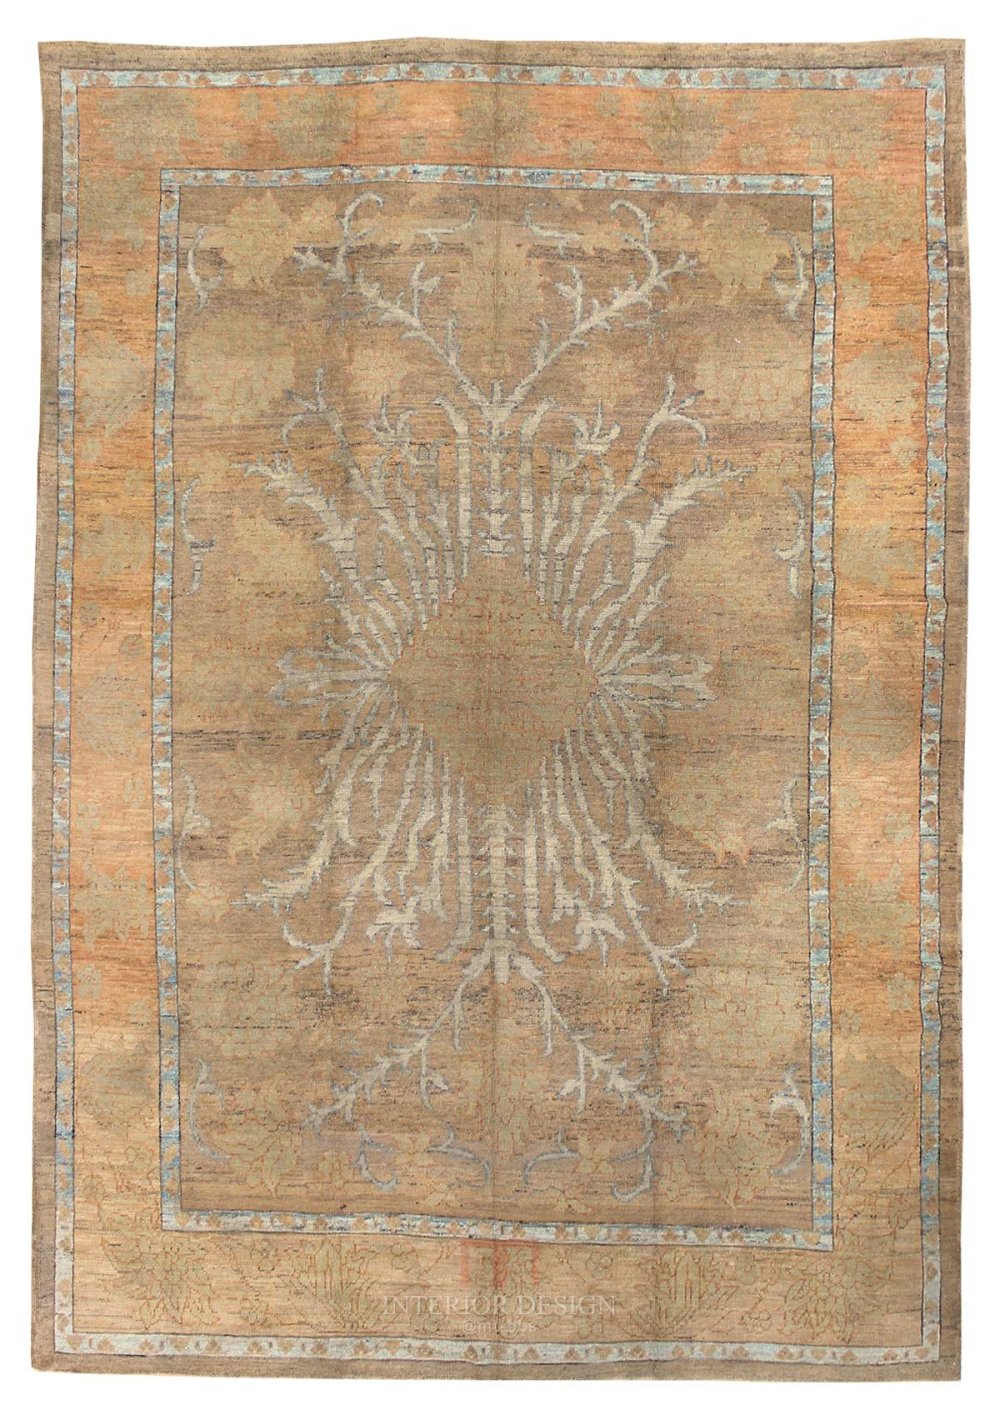 2015年收集国外手工波斯地毯贴图720p-免费分享，6-16号更新_J42674-Oushak-Type-Persian-Rug.jpg